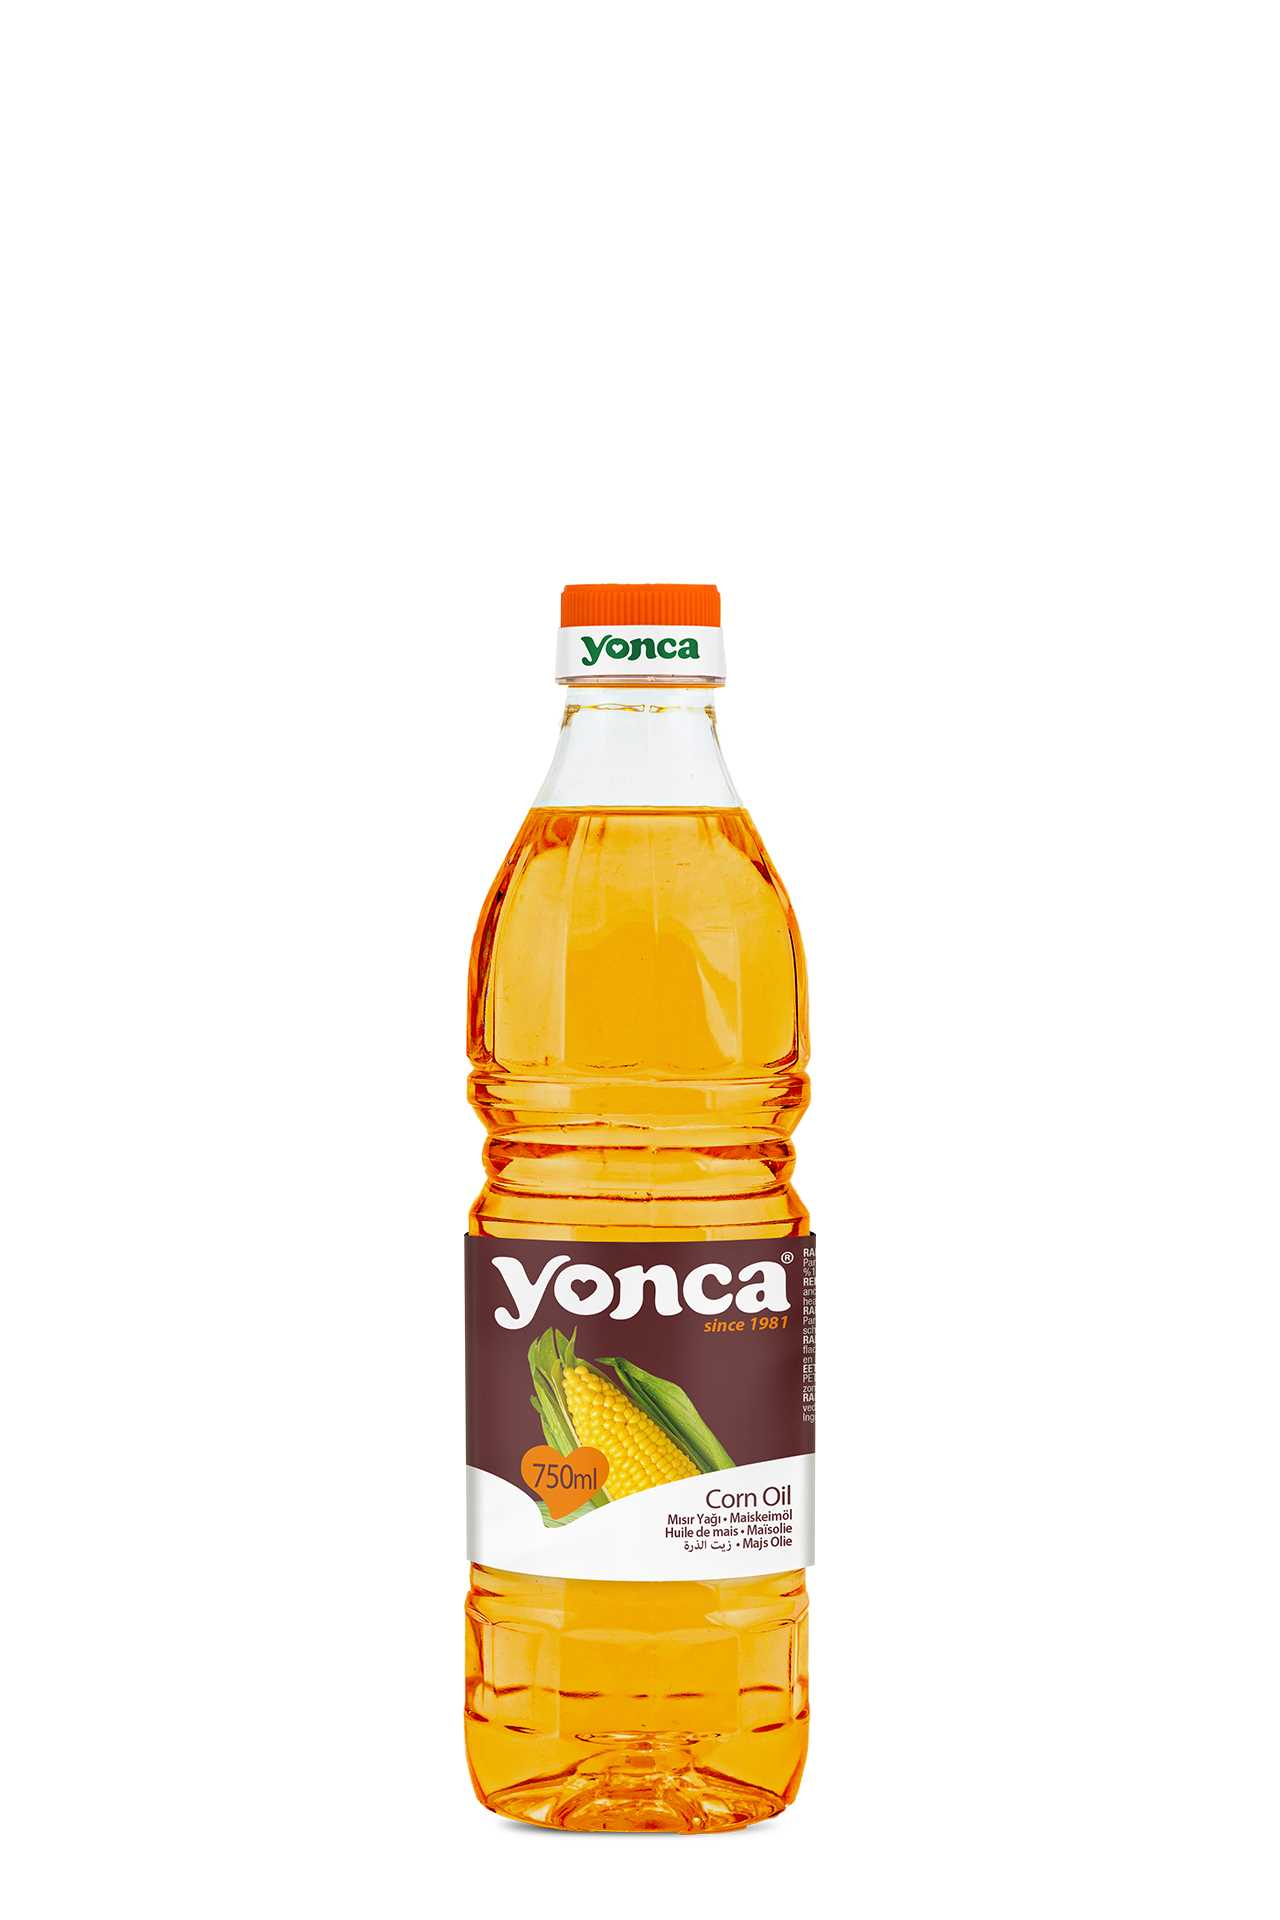 Corn Oil | Yonca Food